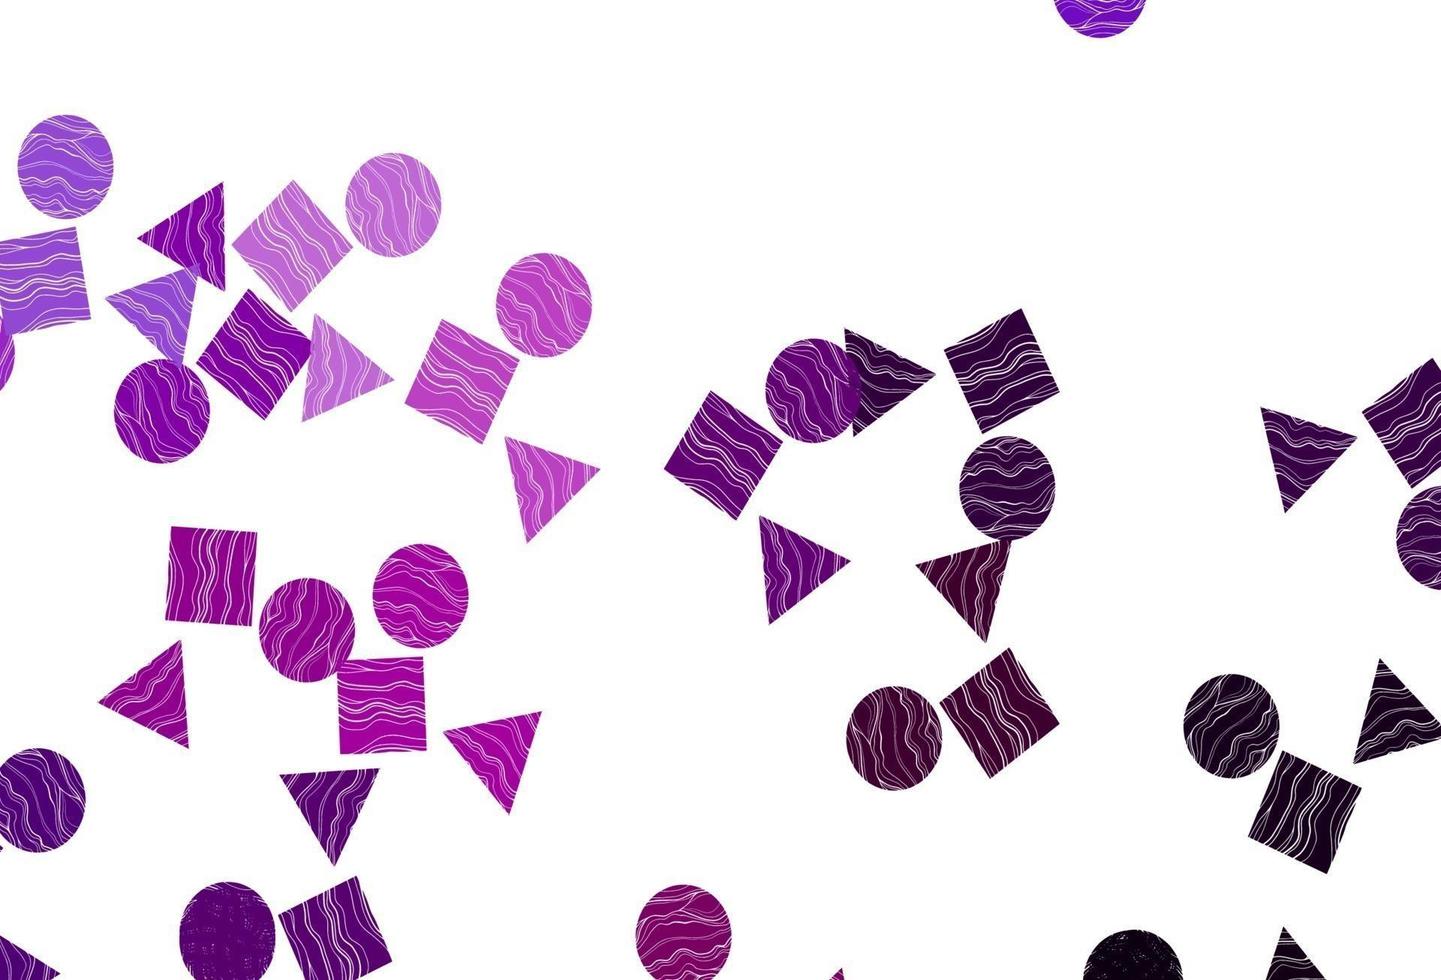 fond de vecteur violet clair avec des triangles, des cercles, des cubes.